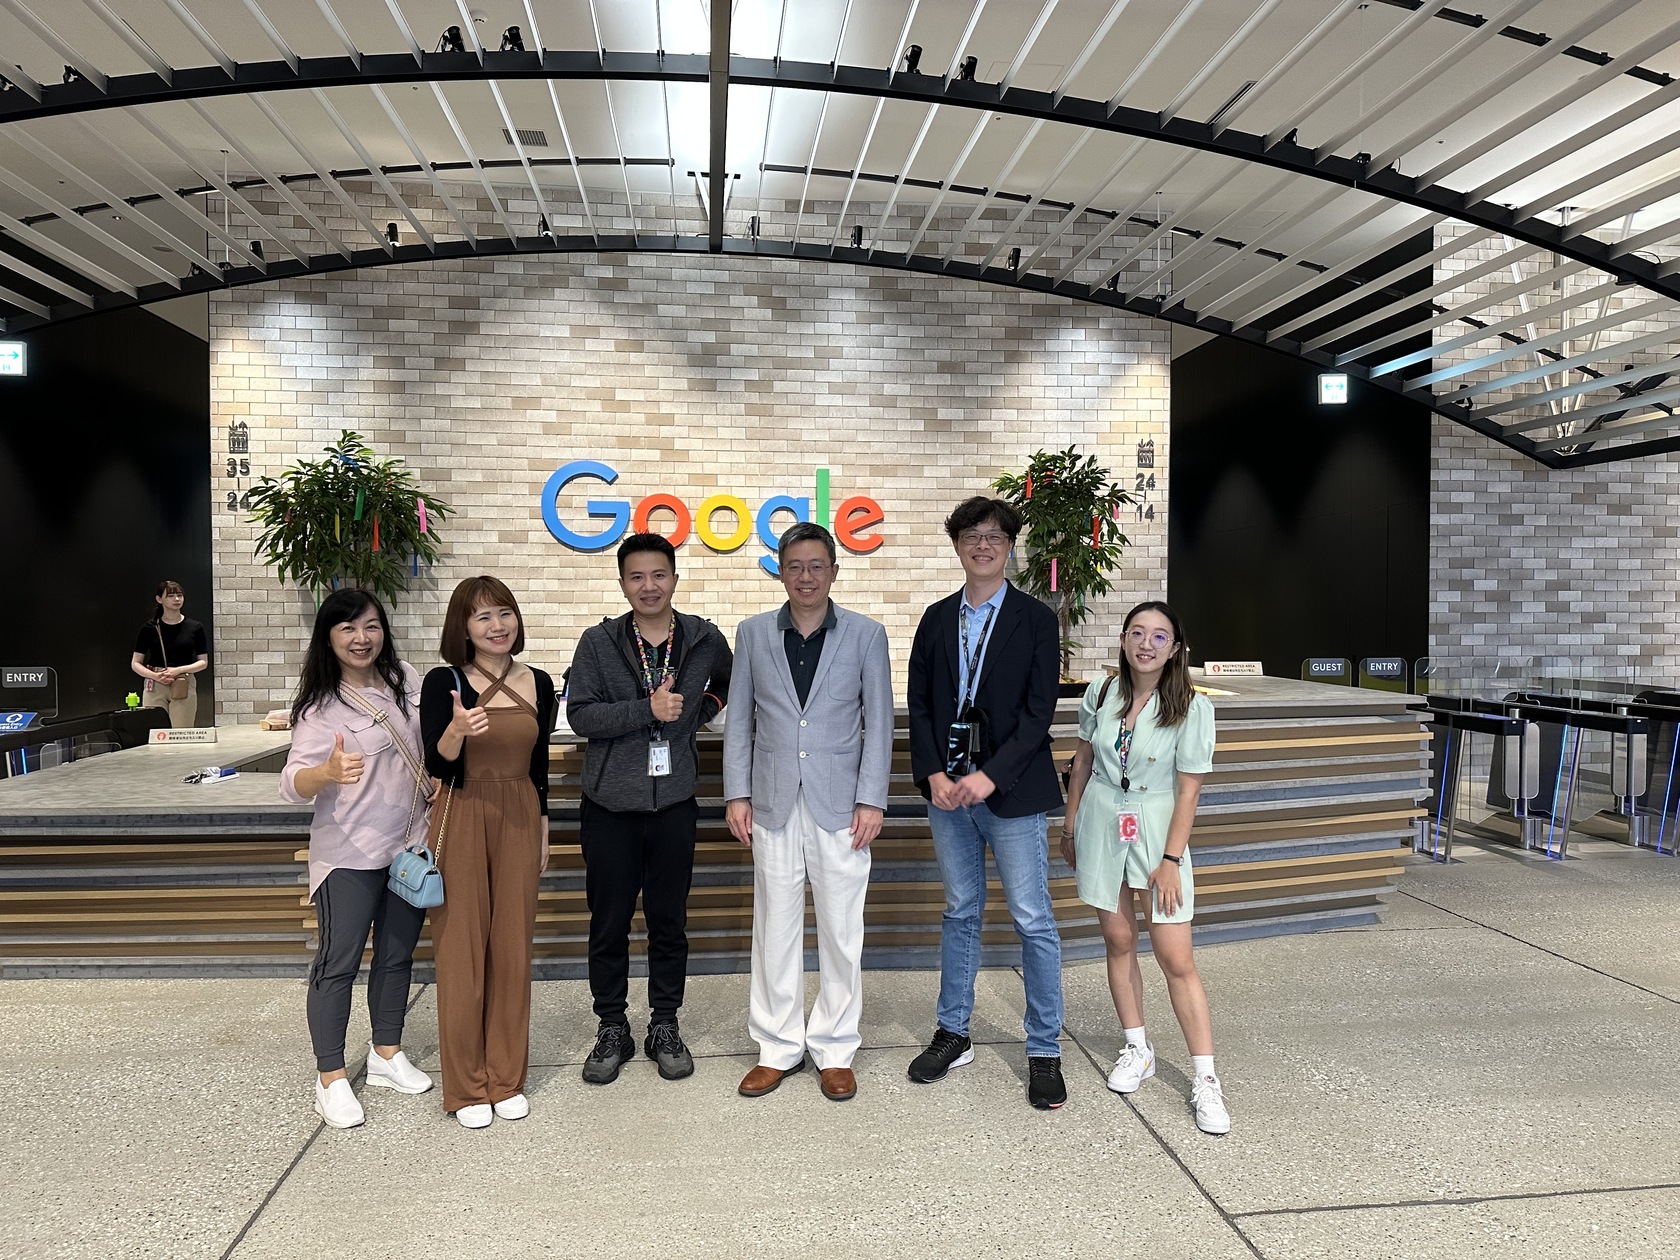 臺灣學術交流團隊在日本Google辦公室合影。